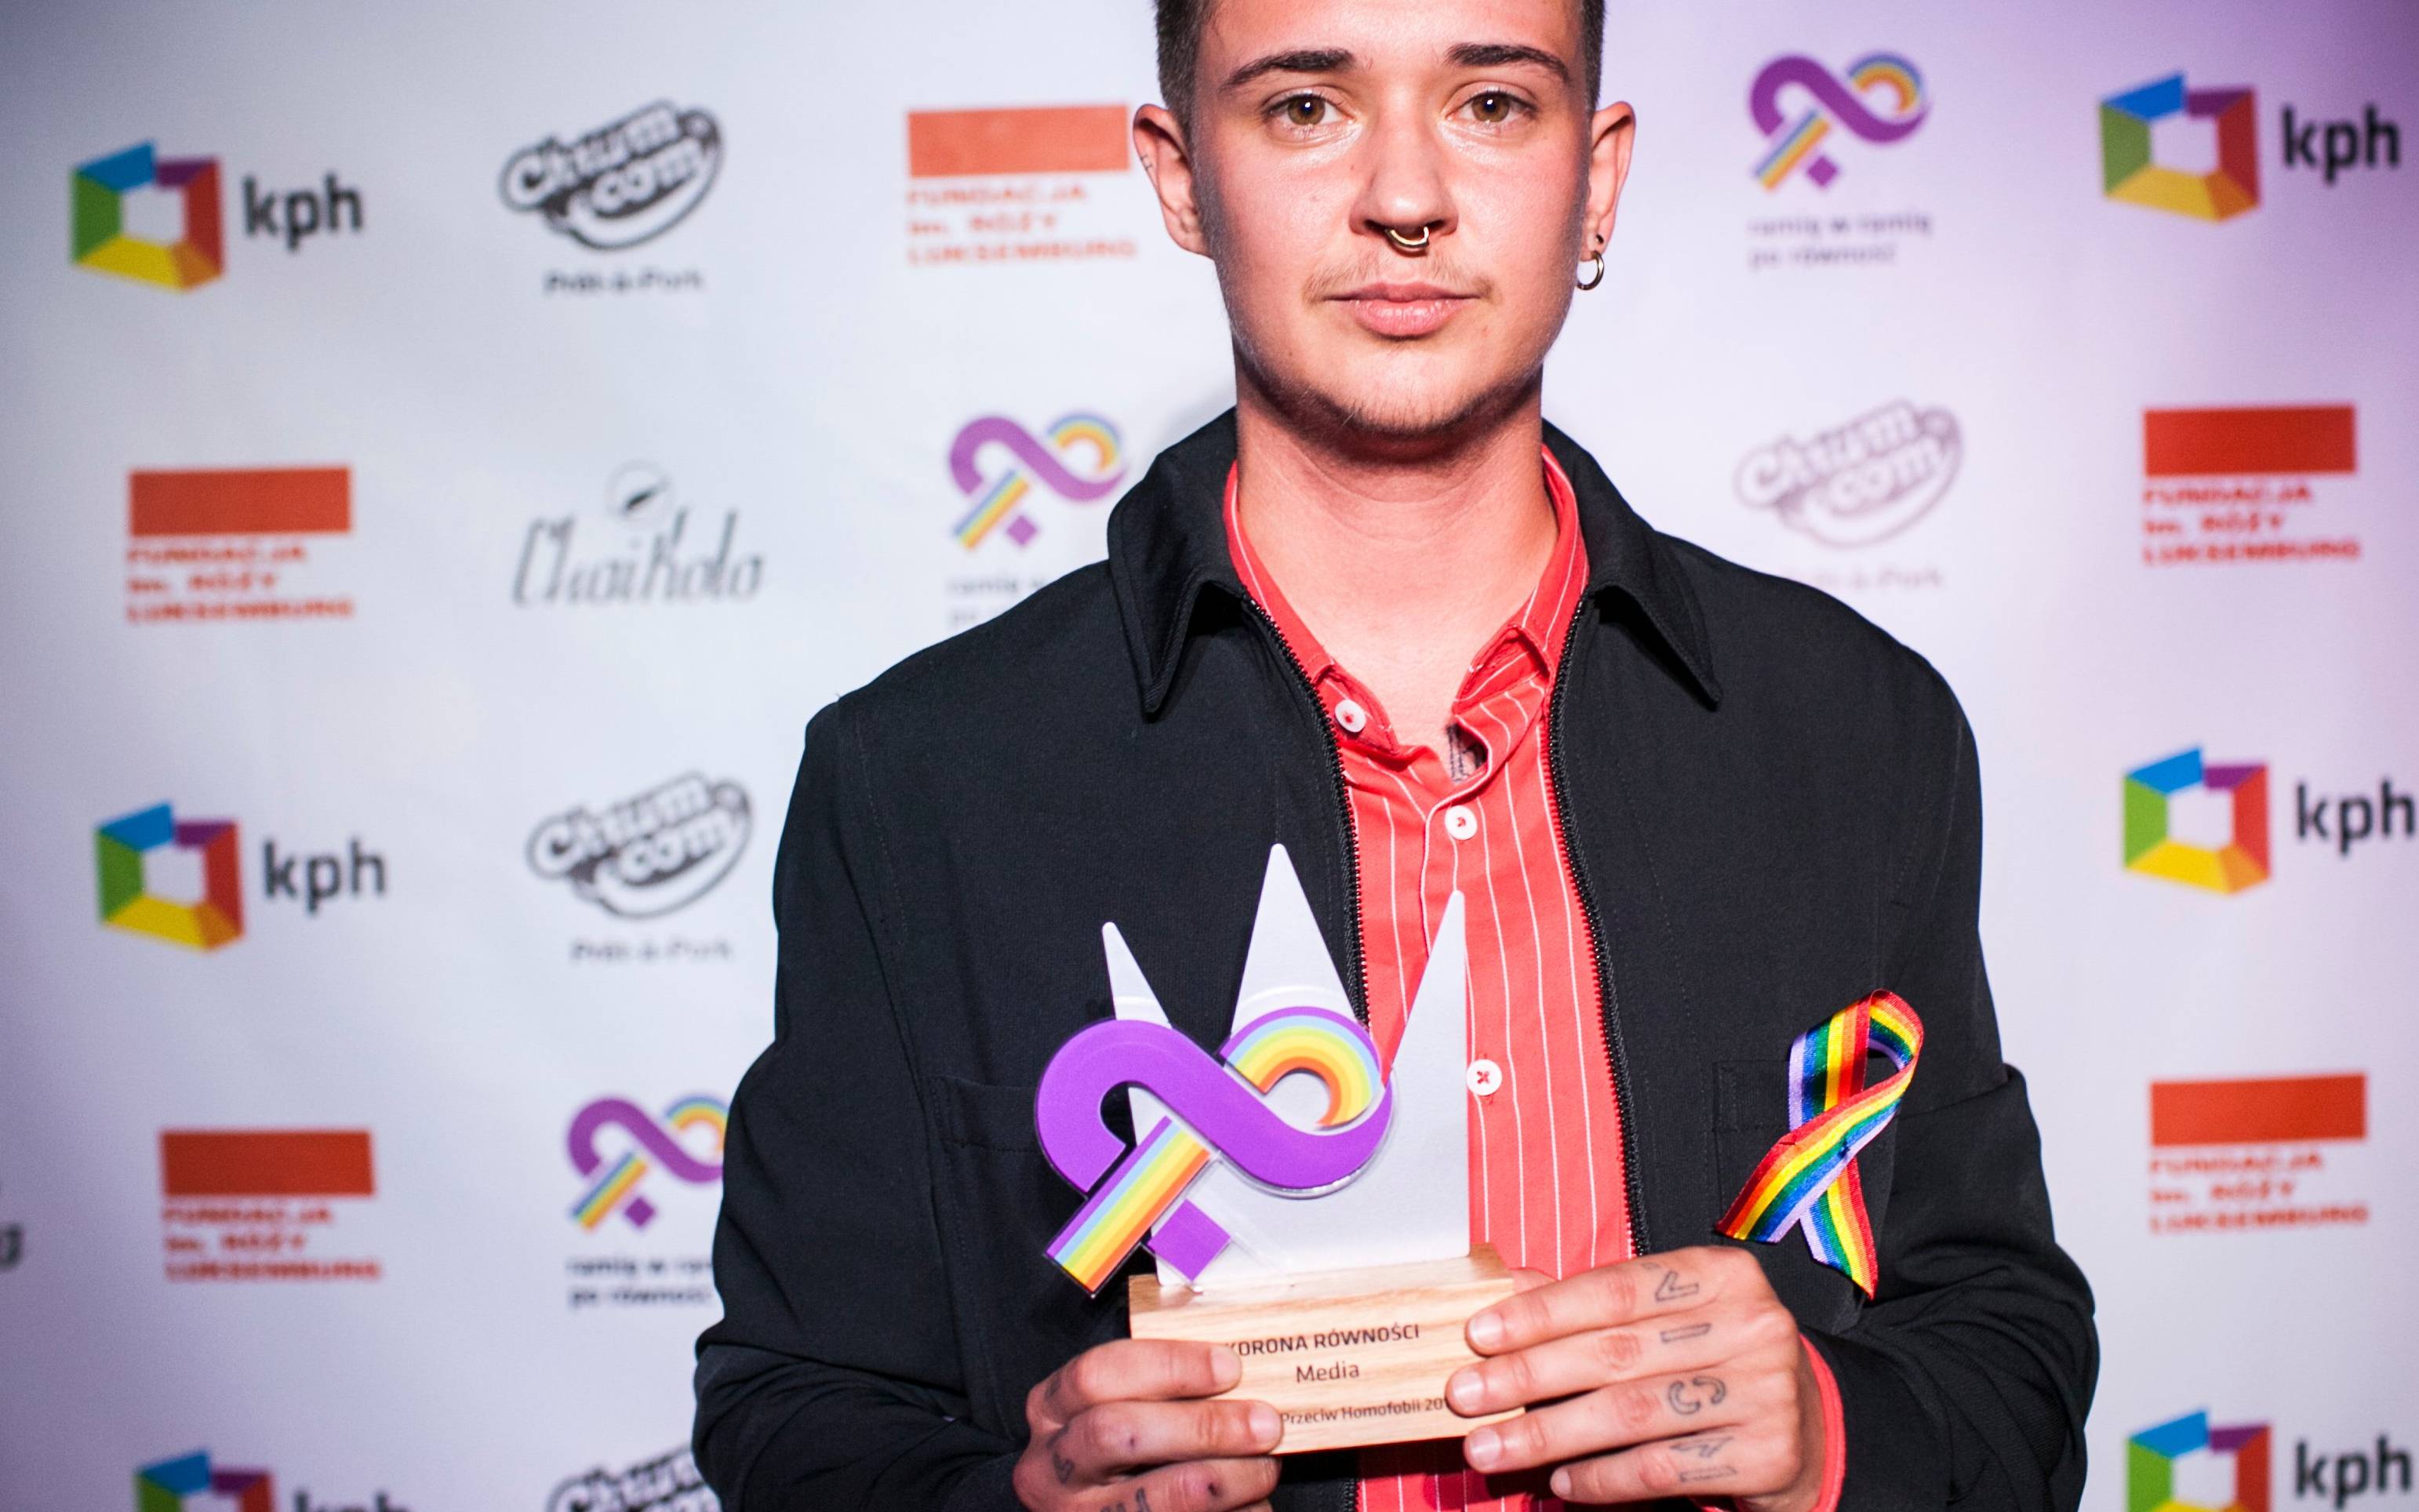 Grafika do artykułu Anton Ambroziak z Koroną Równości od Kampanii Przeciwko Homofobii